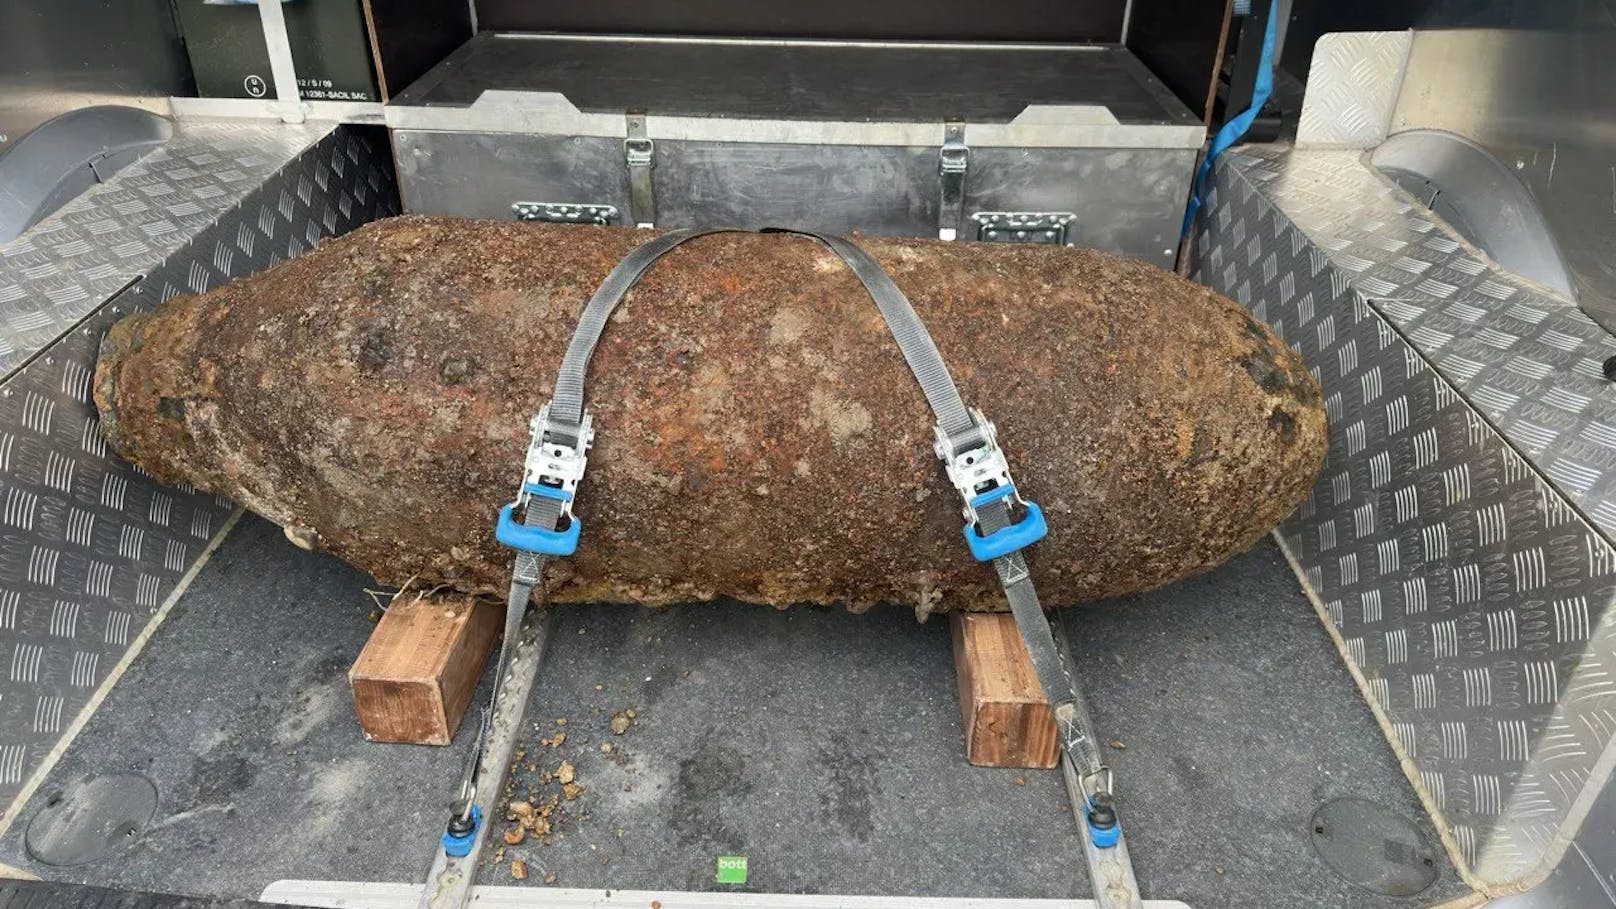 Eine zirka 250 Kilogramm schwere Fliegerbombe wurde in Linz entdeckt.